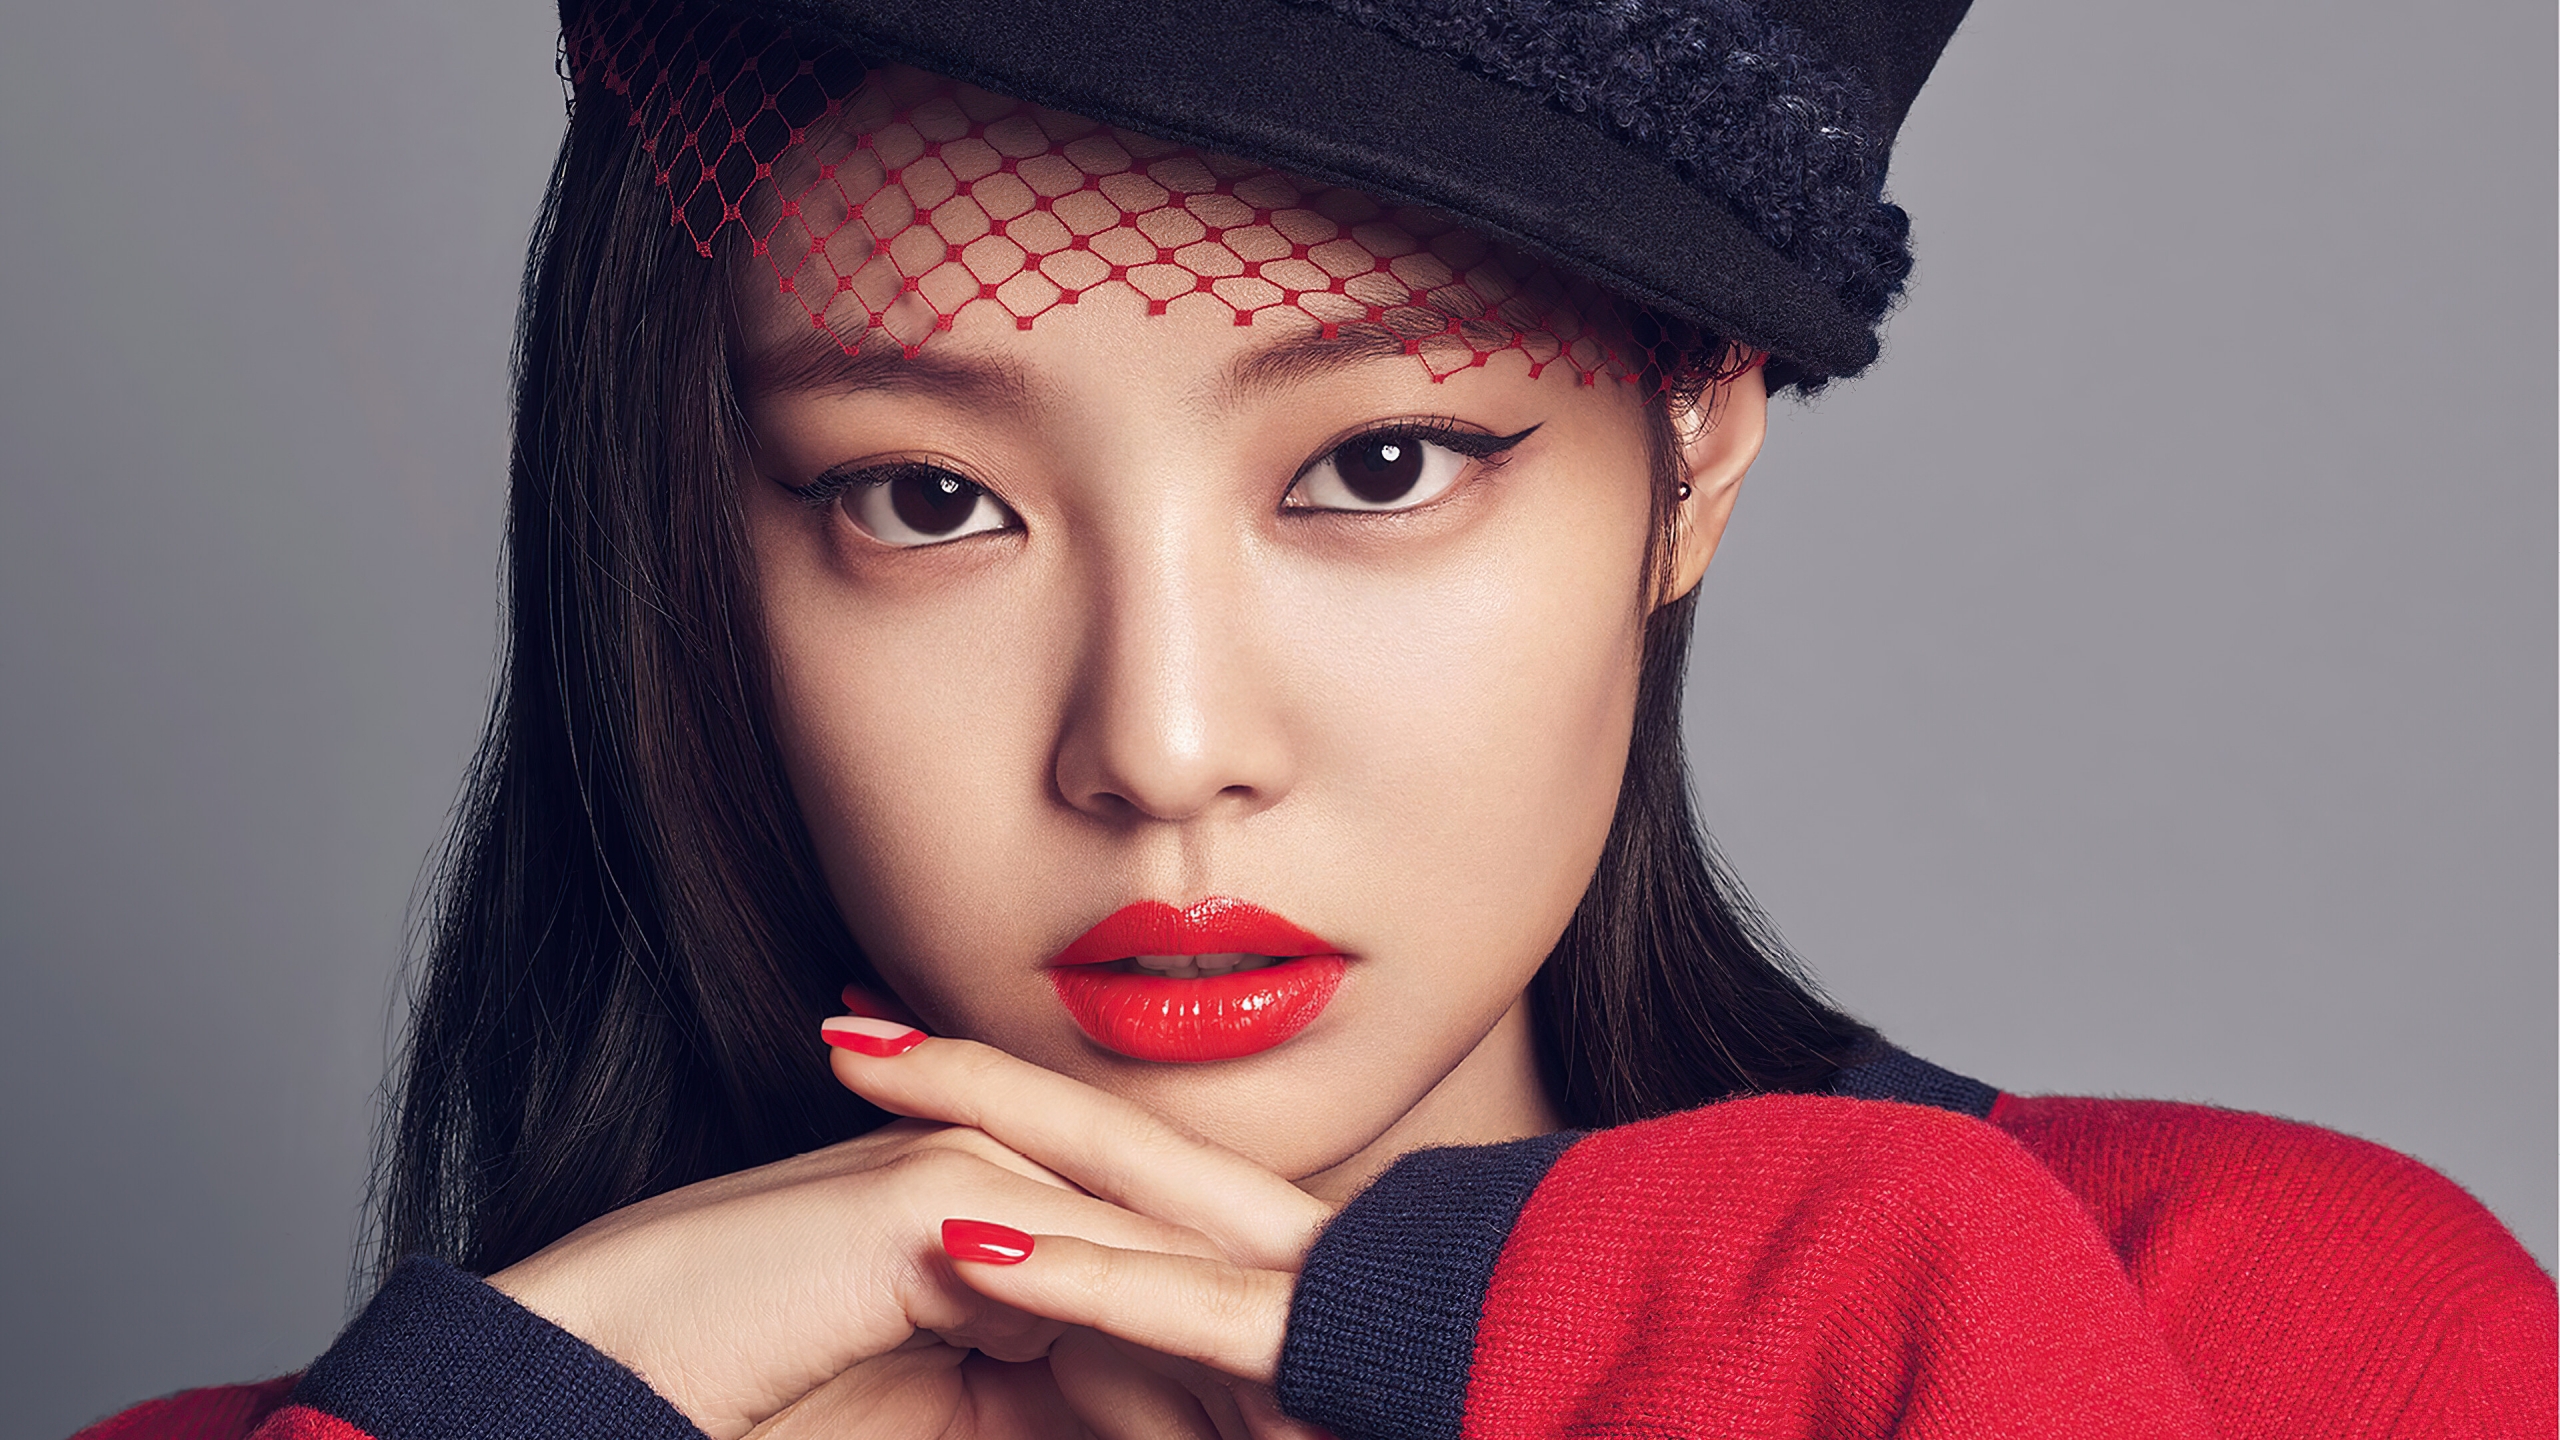 Cantante K-pop Jennie se convierte en la nueva embajadora de Chanel